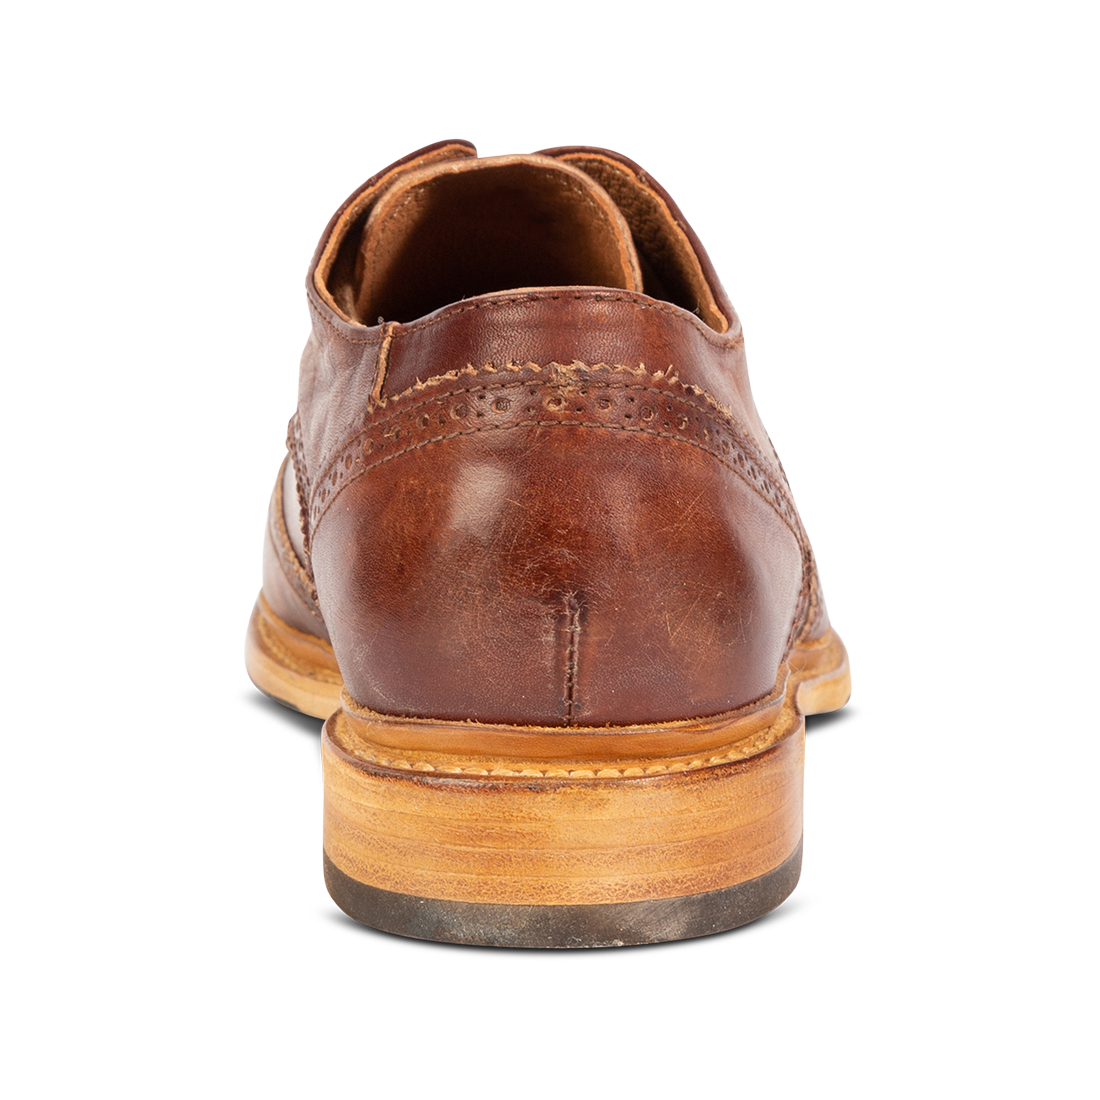 Back view showing low heel on FREEBIRD men's Kensington cognac shoe